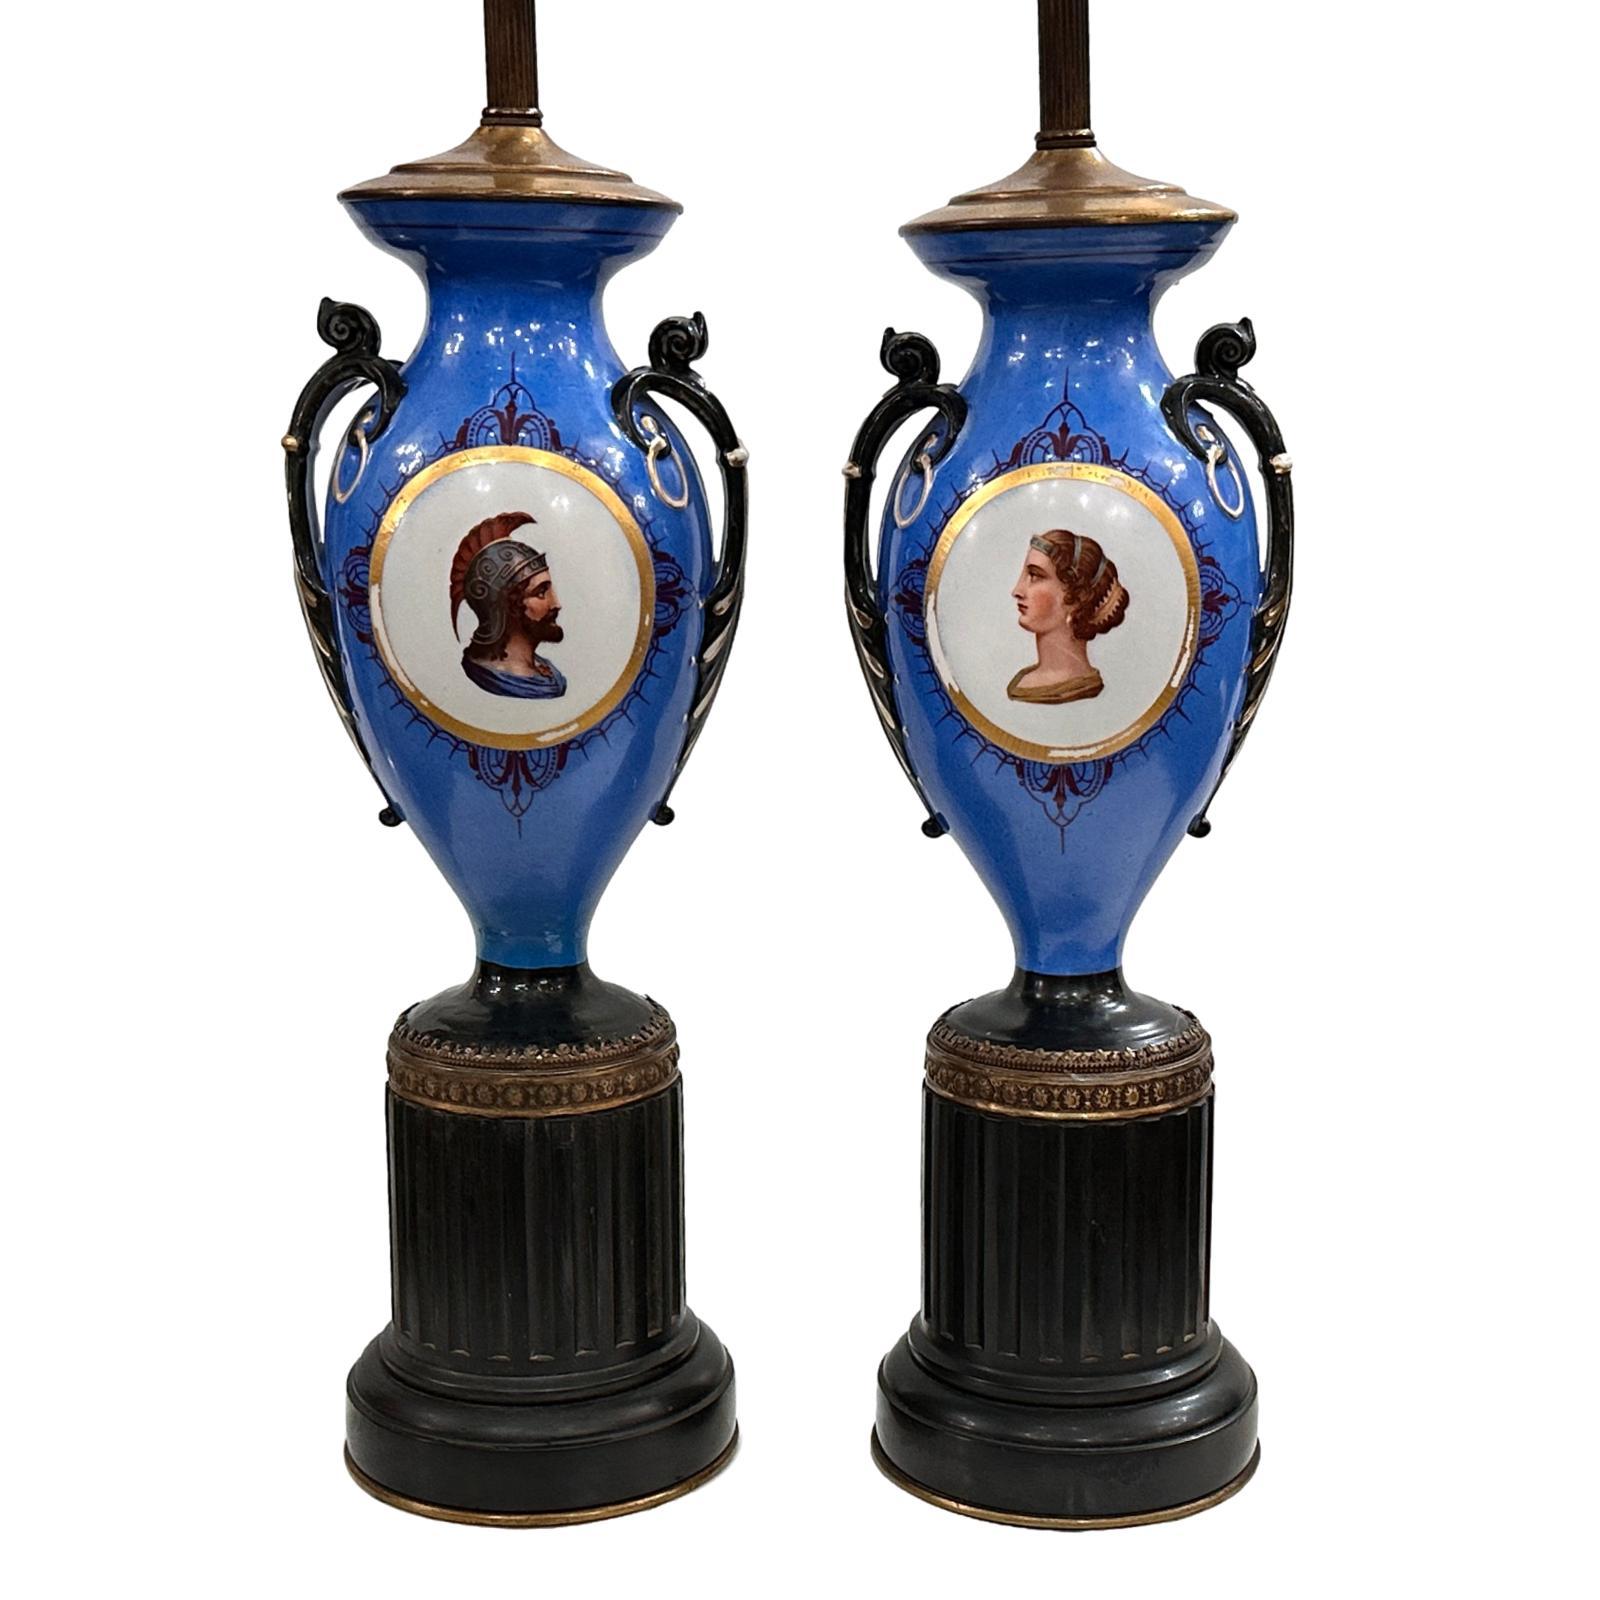 Ein Paar französische Vasen aus den 1920er Jahren, die als Lampen montiert sind.

Abmessungen:
Höhe des Körpers: 18